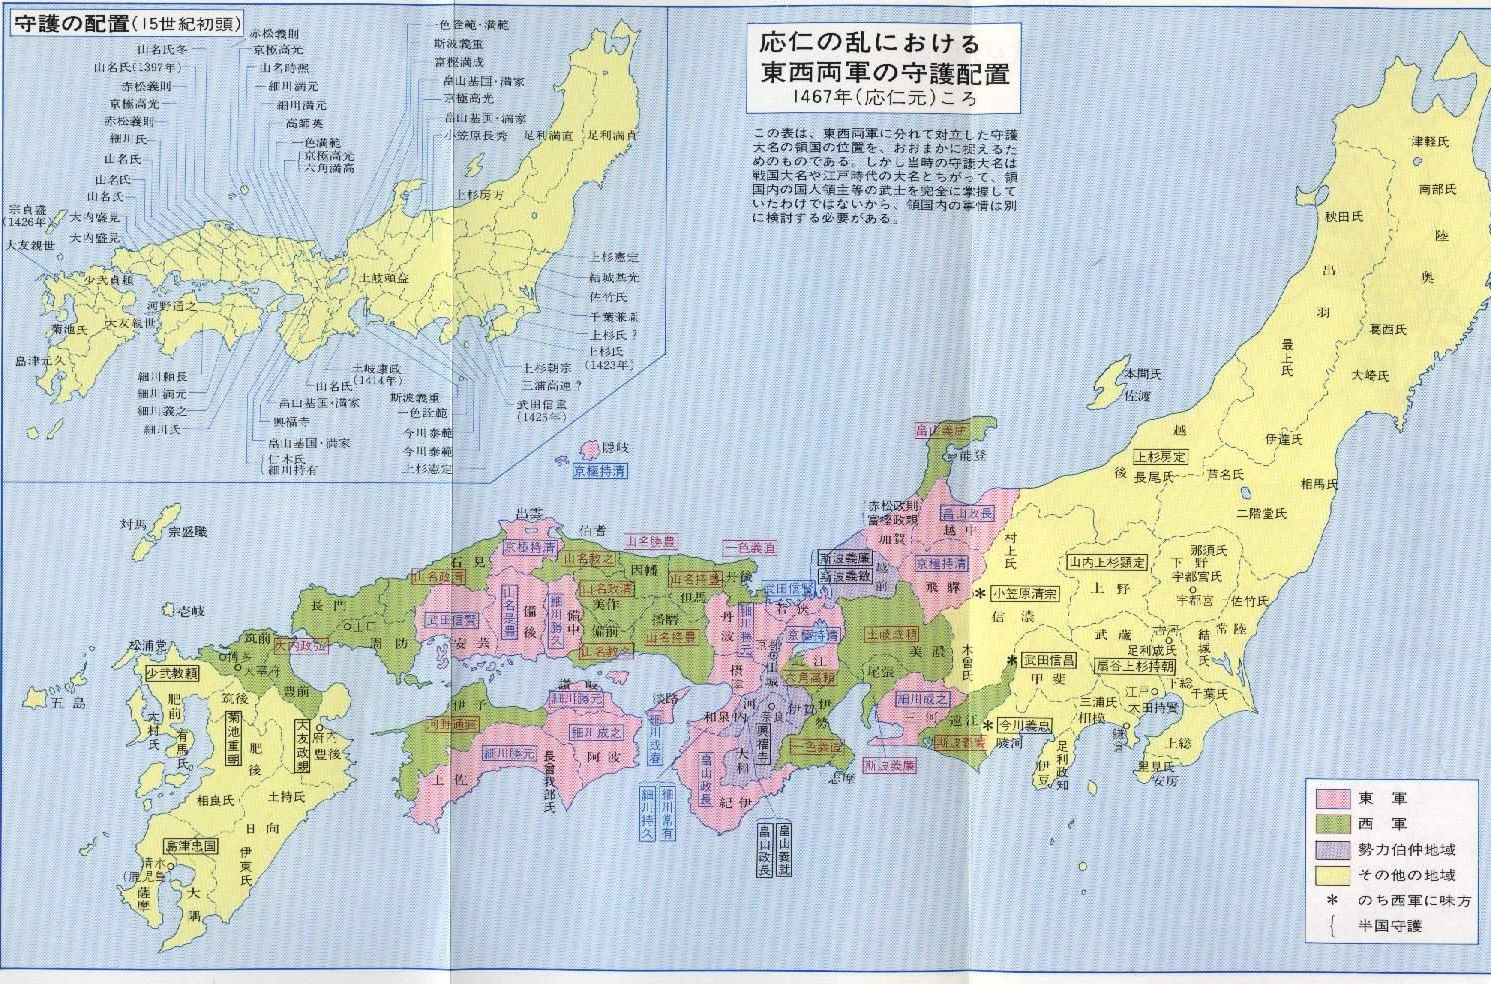 人文历史 桶狭间之战前夕 公元1467年,日本室町幕府因为幕府将军足利